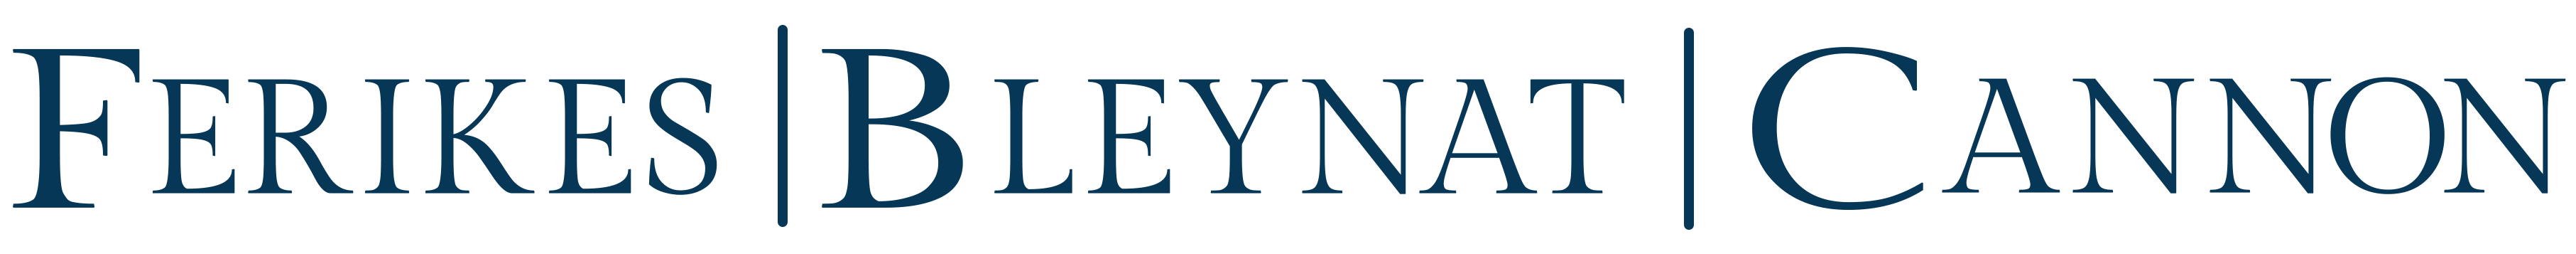 Ferikes Bleynat & Cannon PLLC Logo